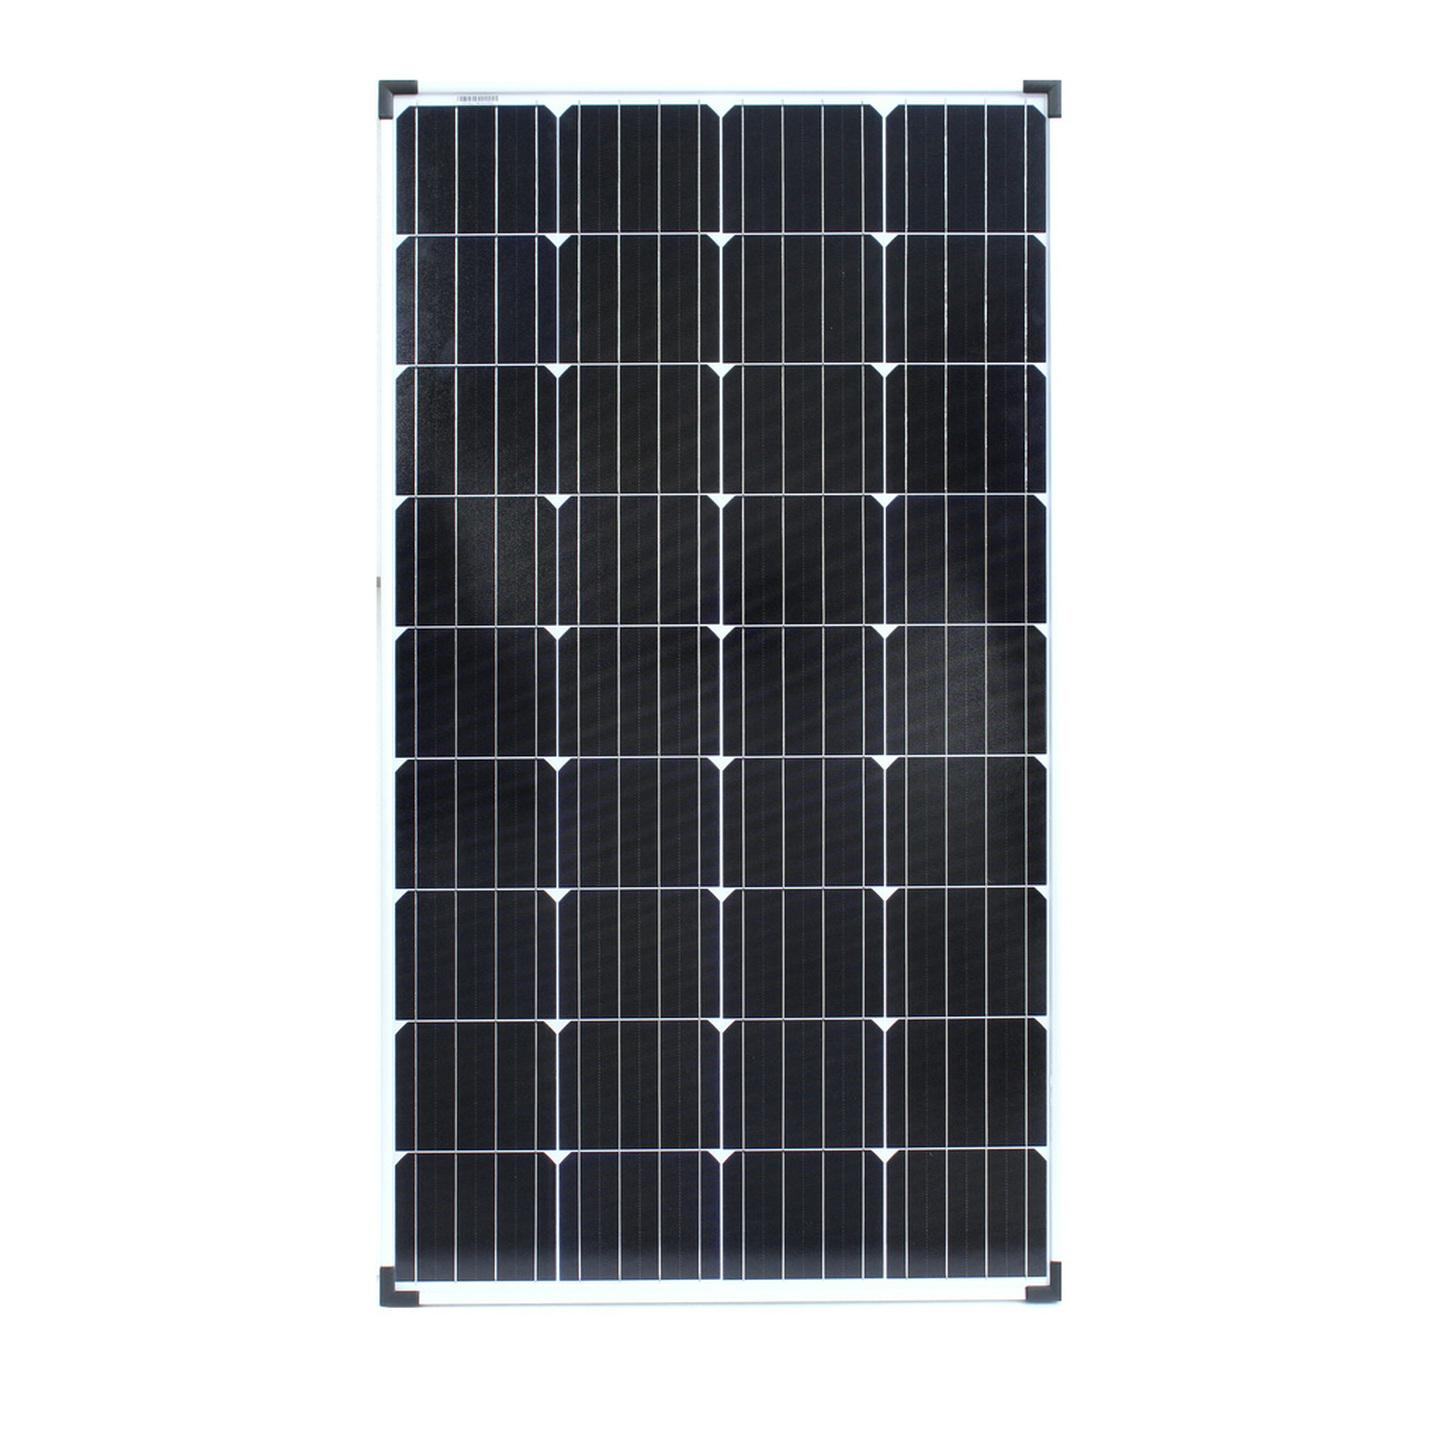 12V 120W Monocrystalline Solar Panel